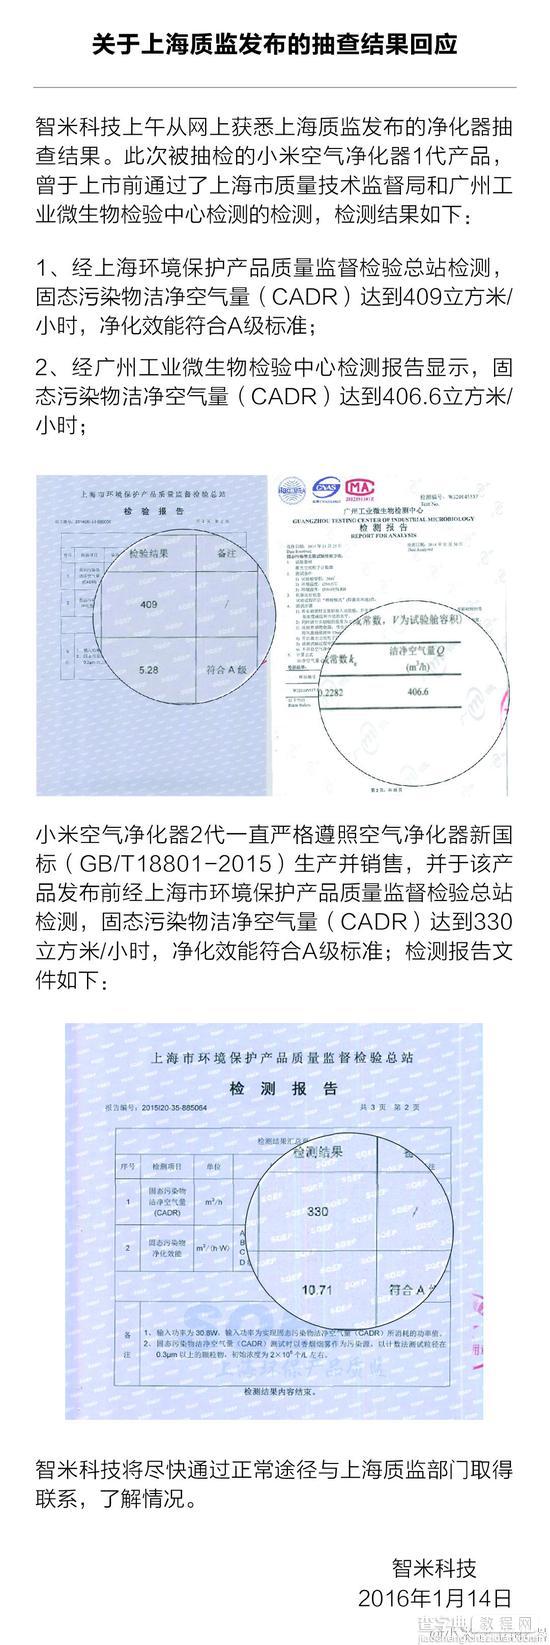 上海质检:小米空气净化器1代被爆质量问题严重 官方回应2